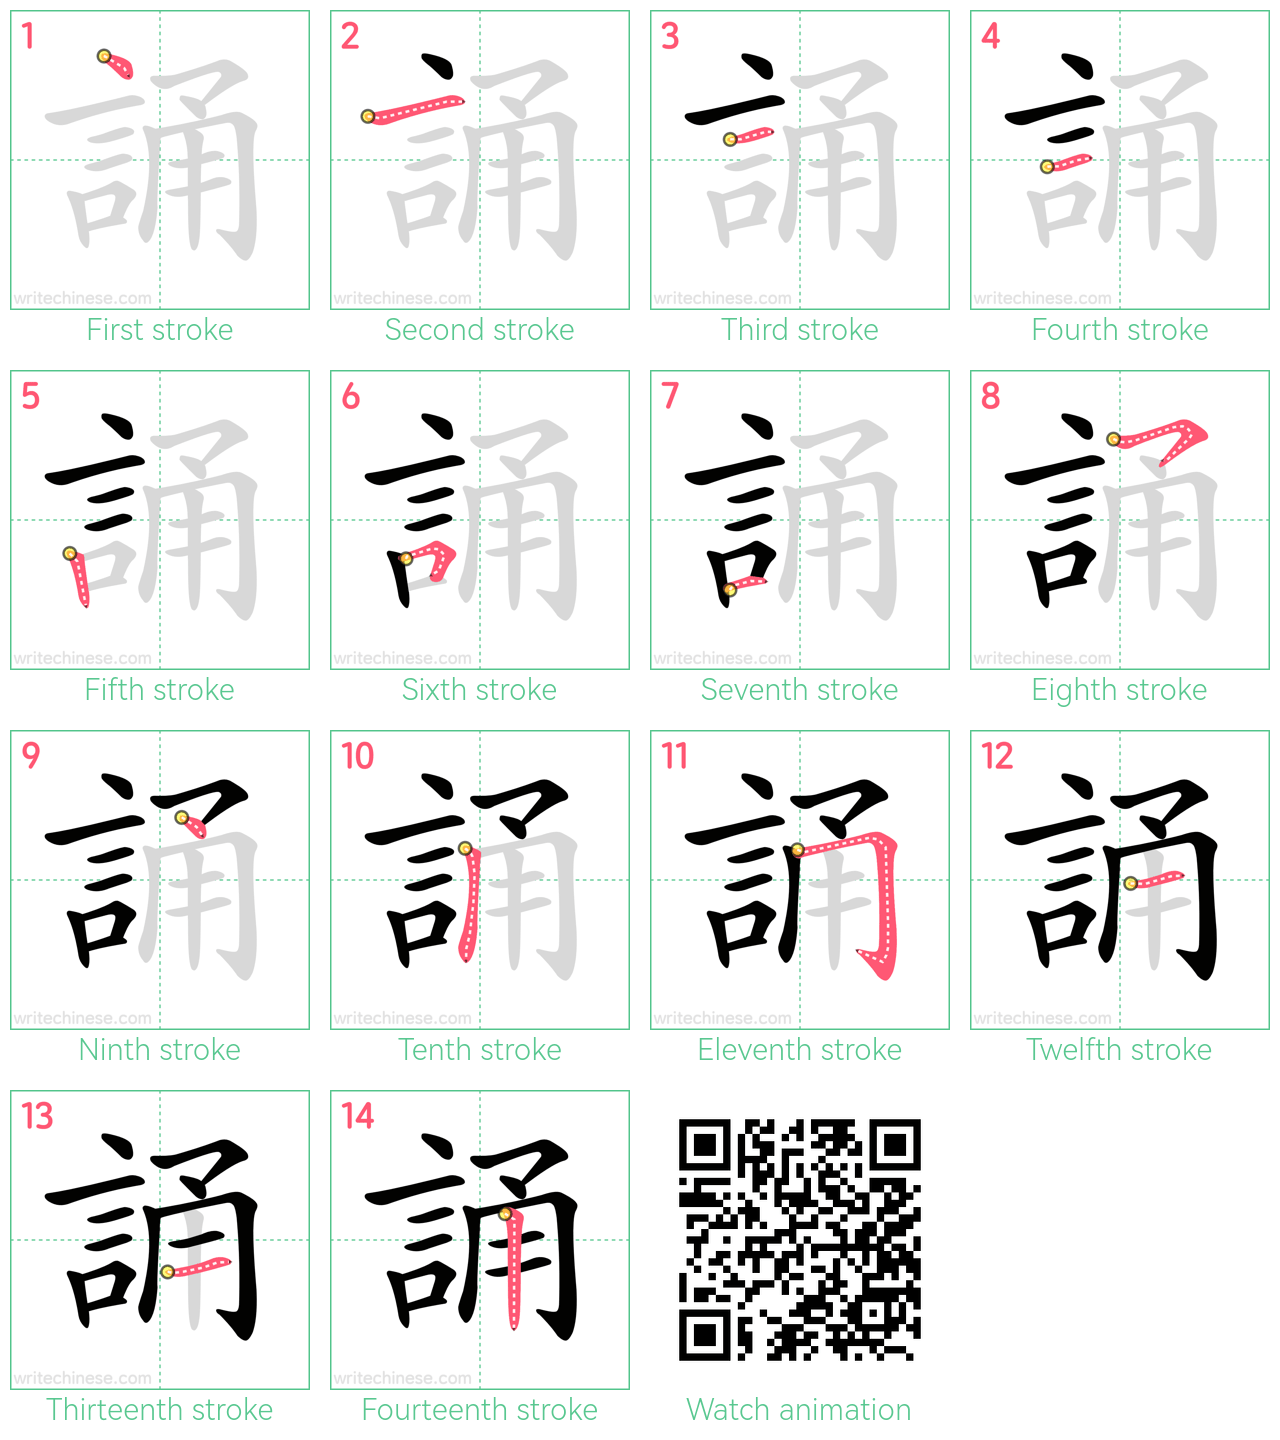 誦 step-by-step stroke order diagrams